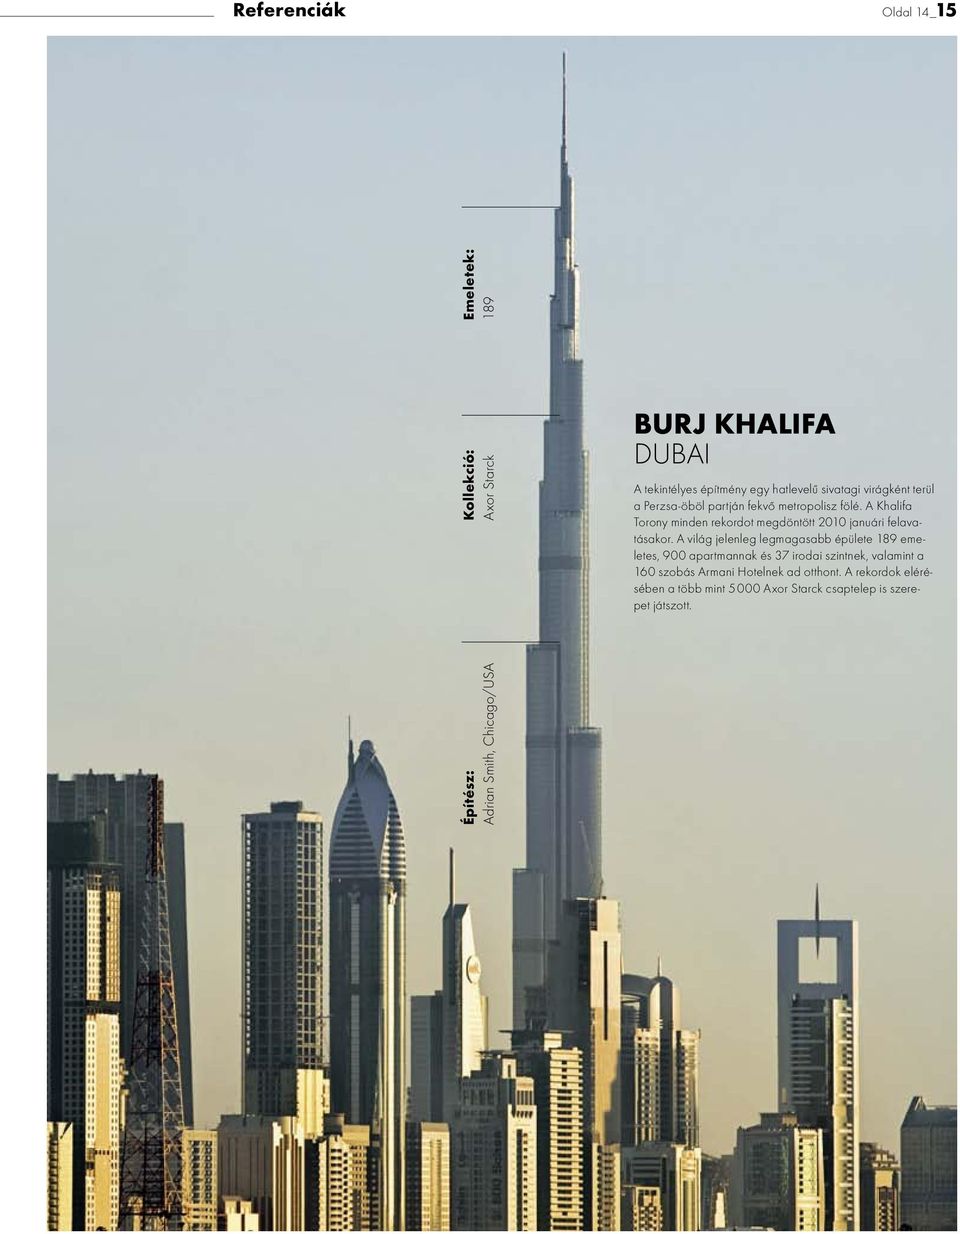 A Khalifa Torony minden rekordot megdöntött 2010 januári felavatásakor.